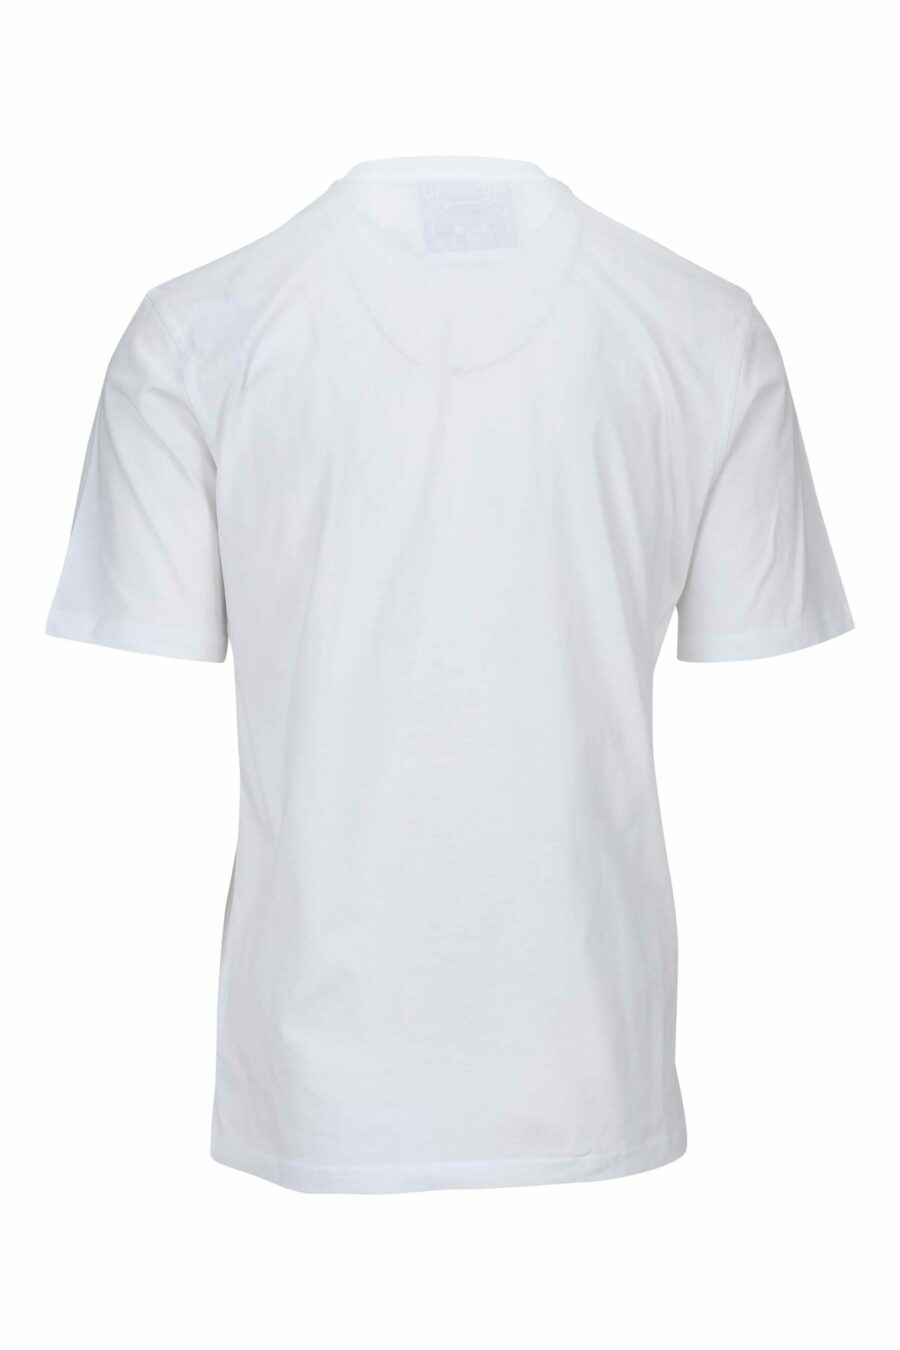 T-shirt branca com maxilogo de urso pontilhado monocromático - 667113455617 1 scaled